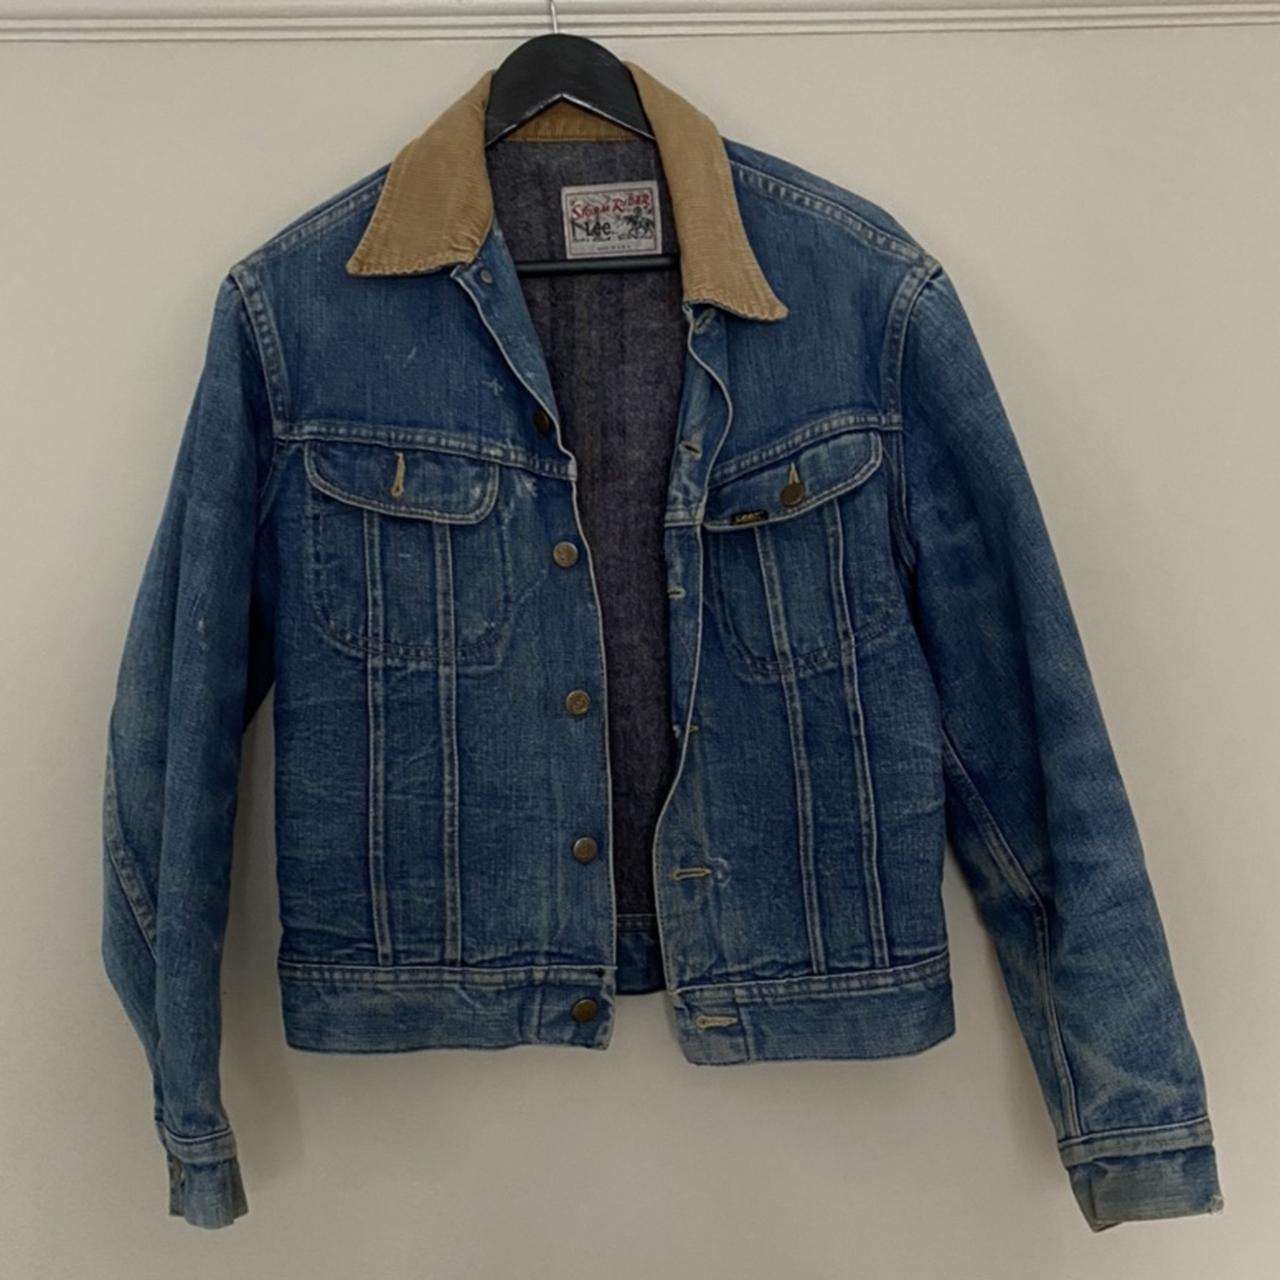 Vintage lee denim jacket size small men’s or womens - Depop